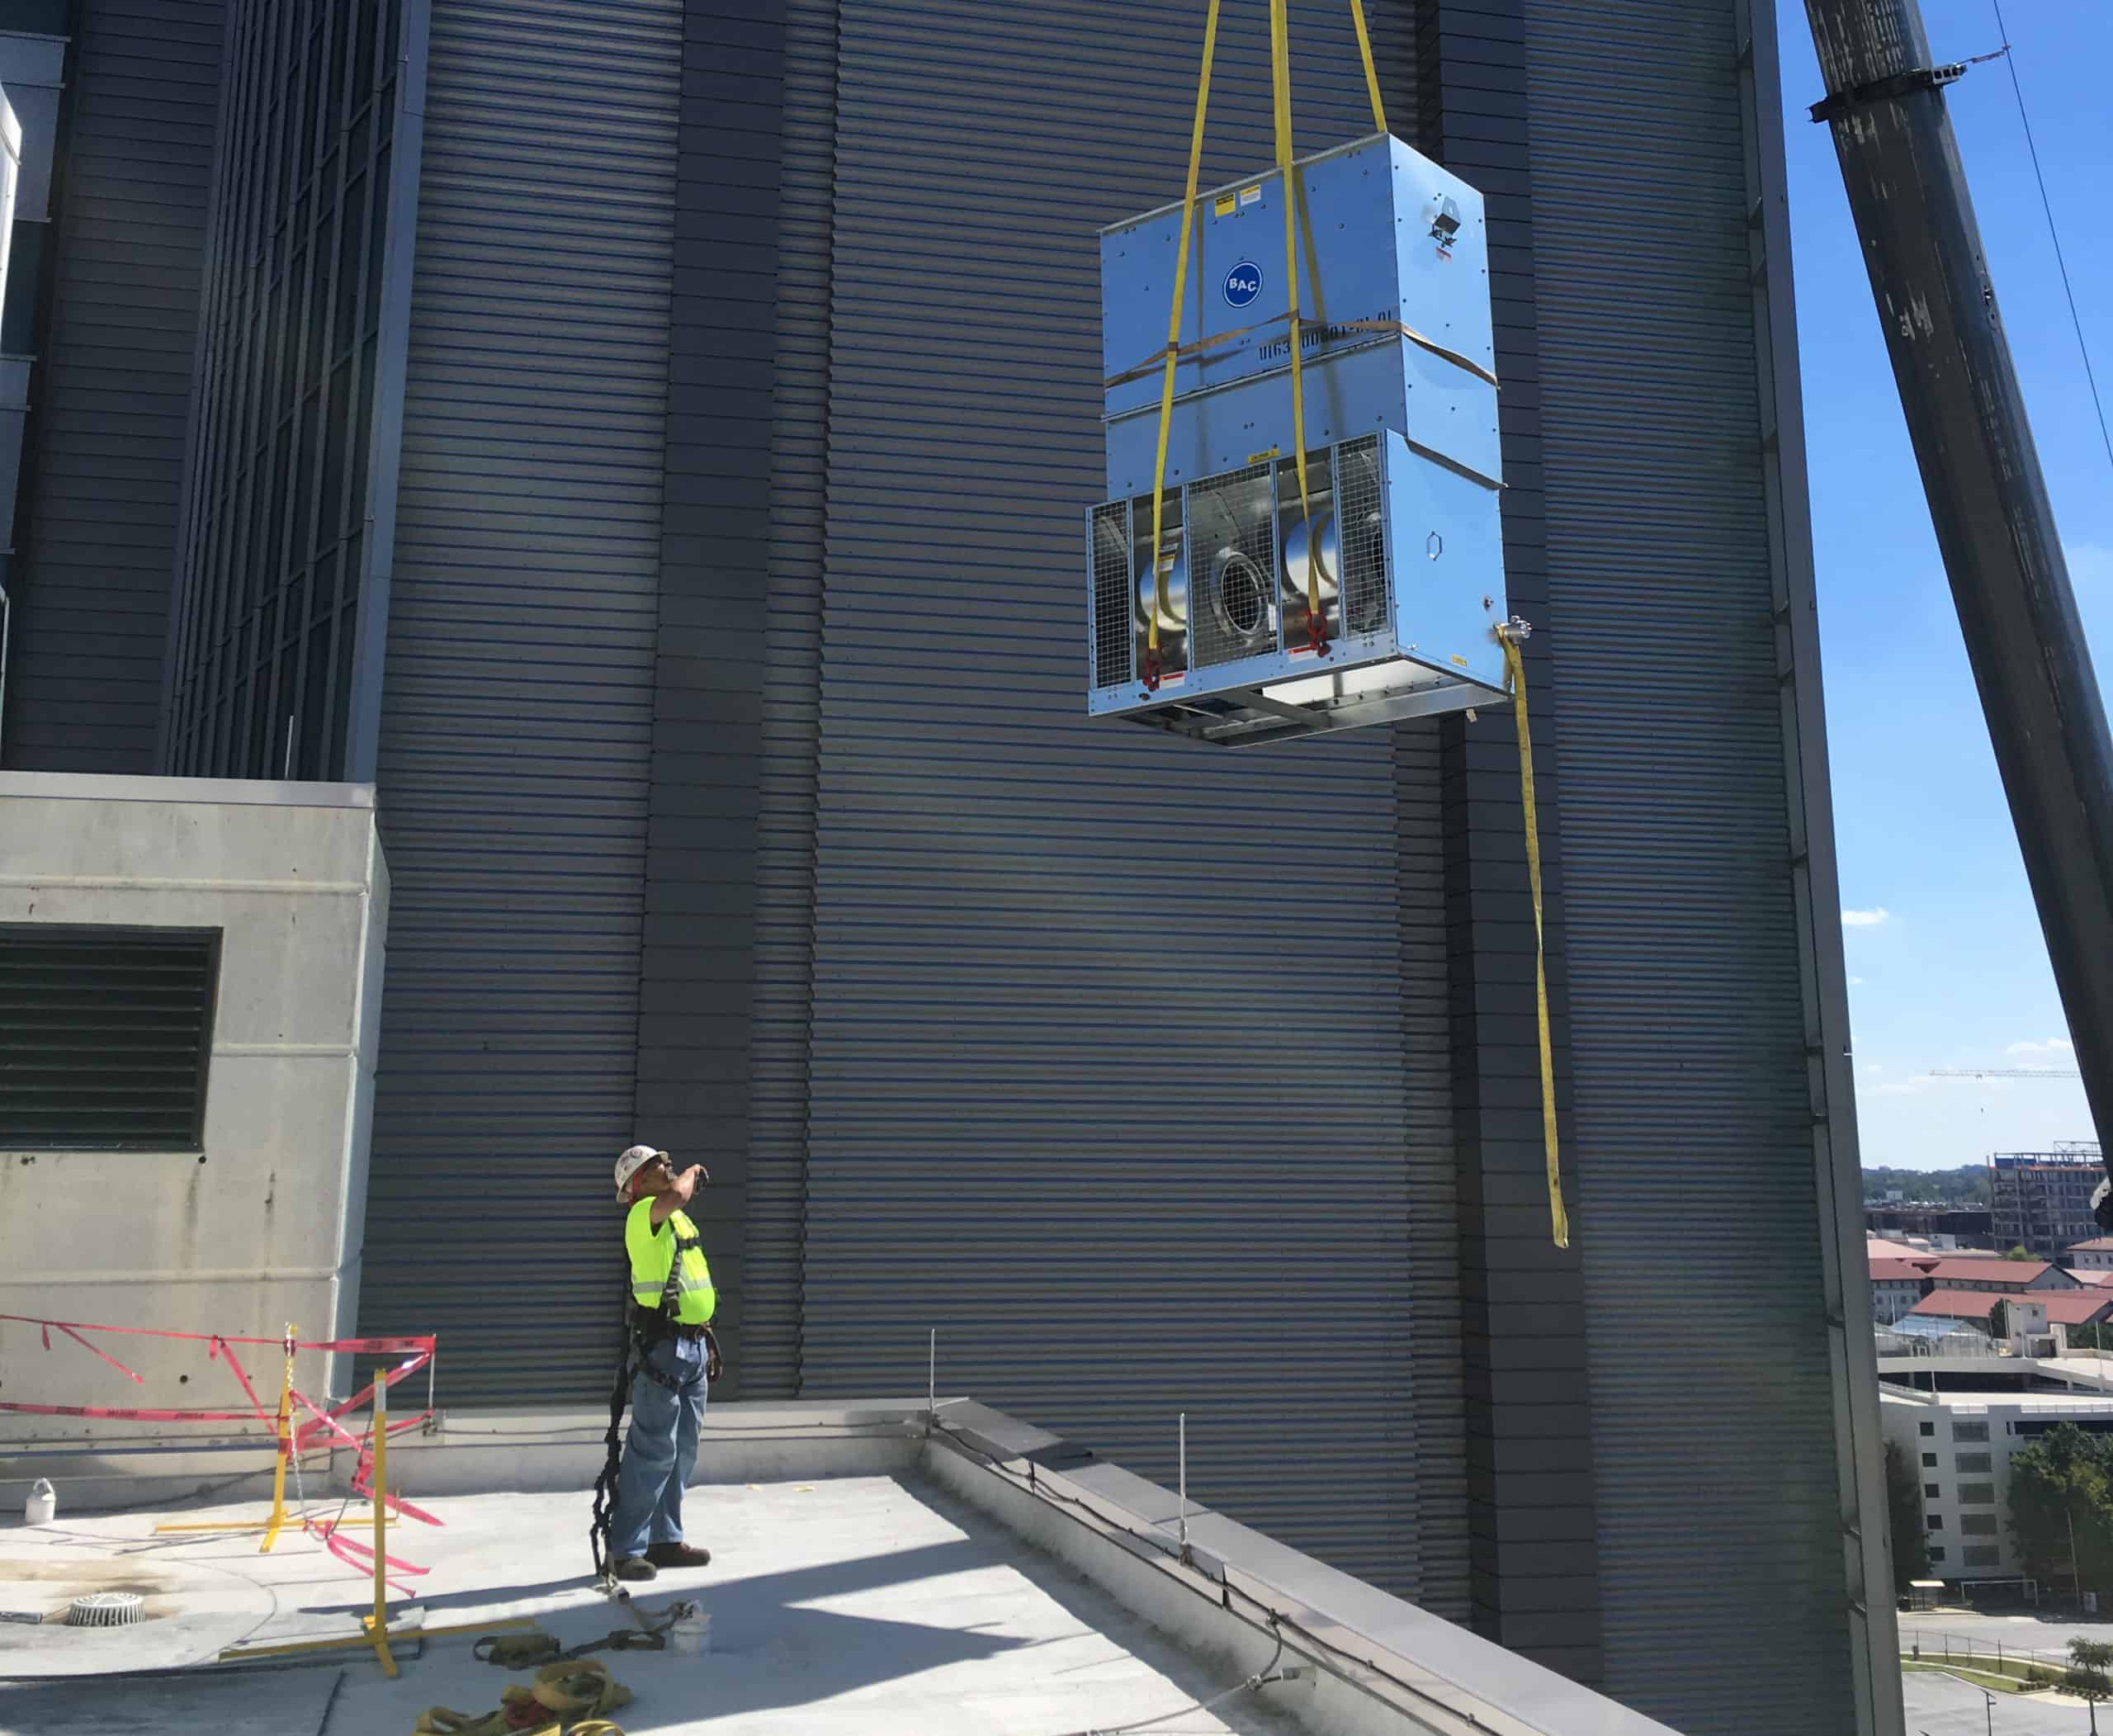 FSE Employee Help Lower Equipment from a Crane